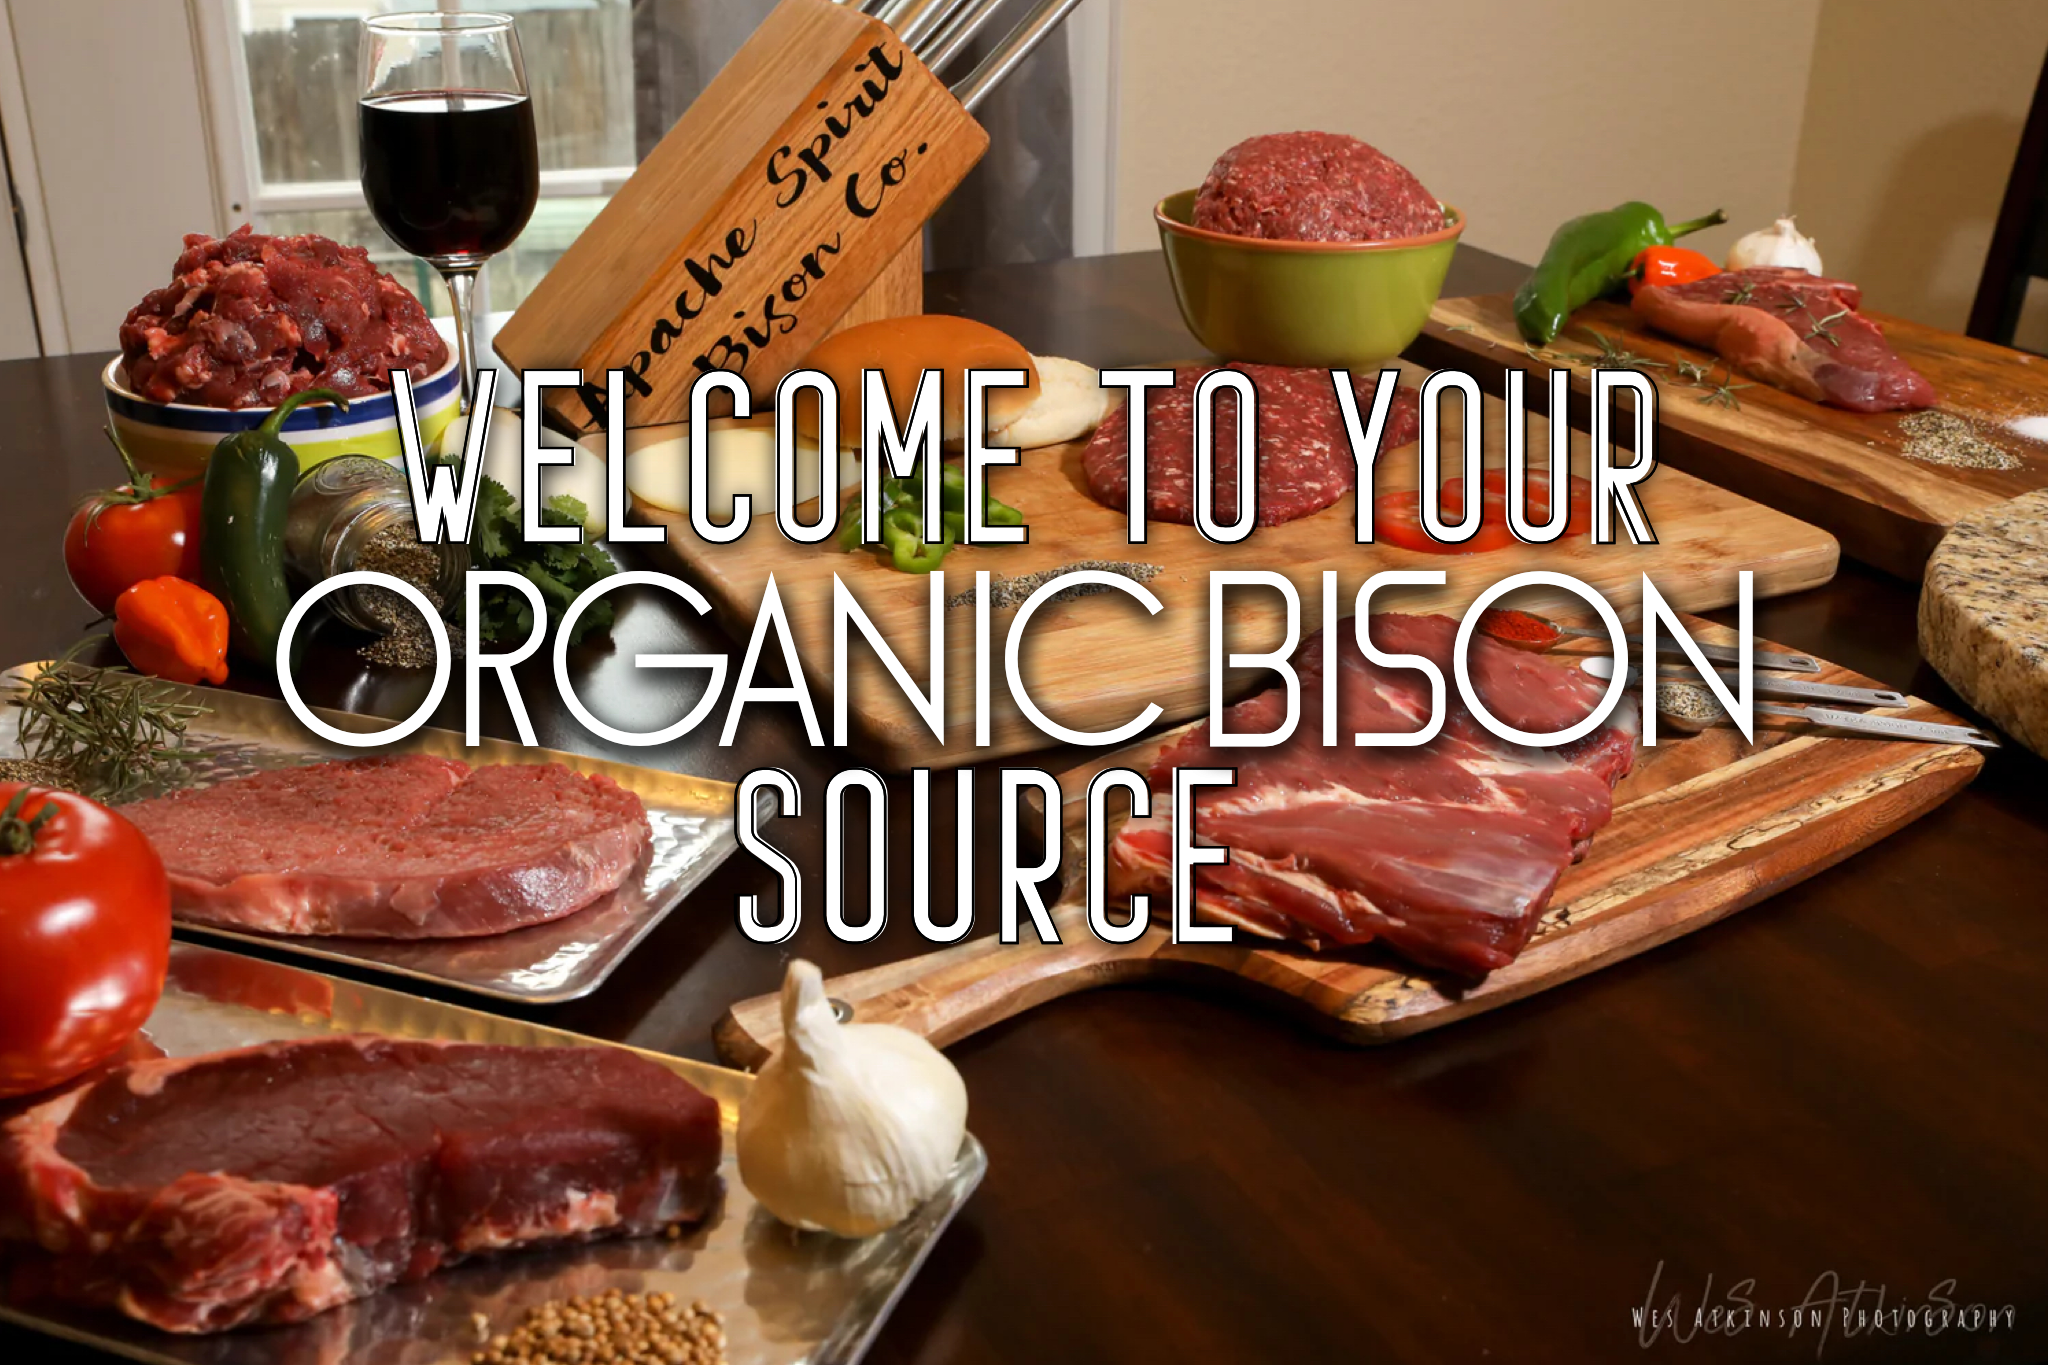 Organic Bison Retailer Image